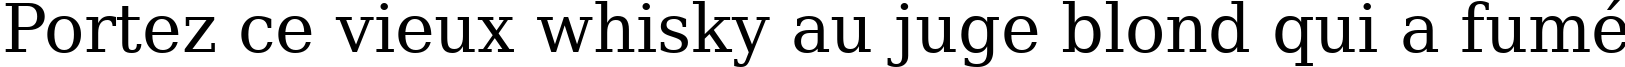 Пример написания шрифтом ae_Arab текста на французском